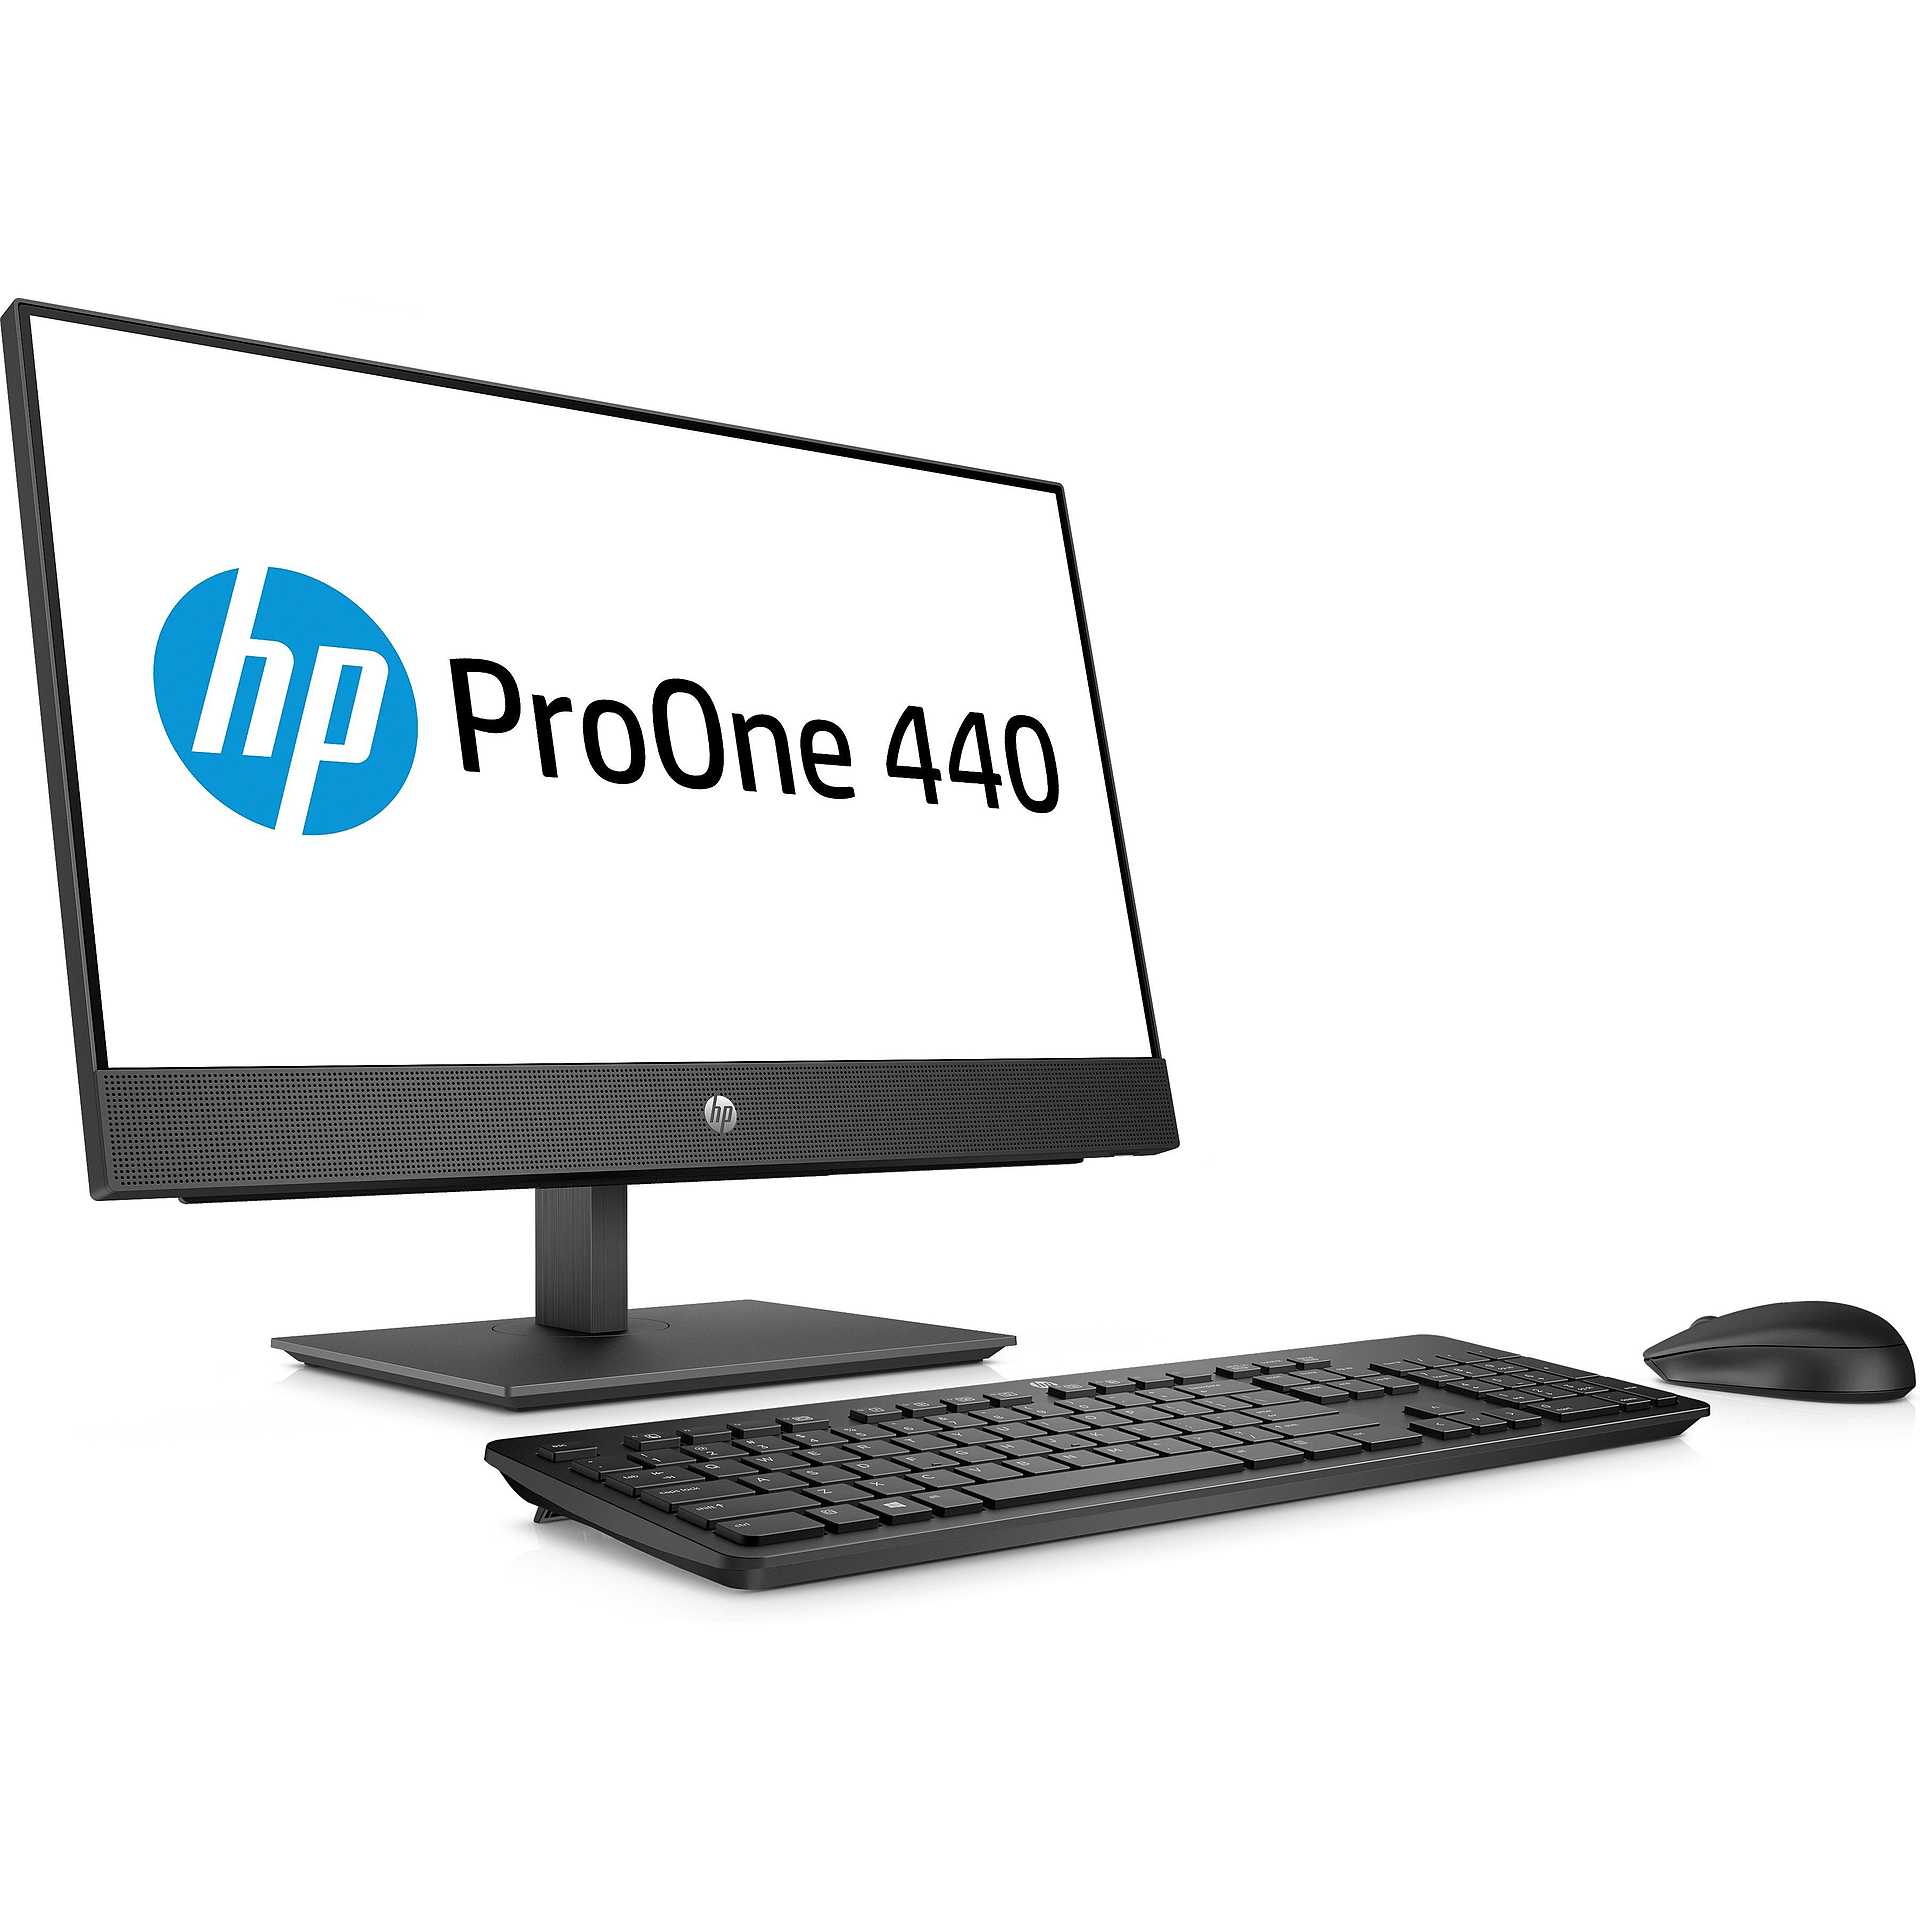 HP ProOne 400 G4 Pc All in One Desktop 20" Intel Core i5 Ram 8 GB SSD